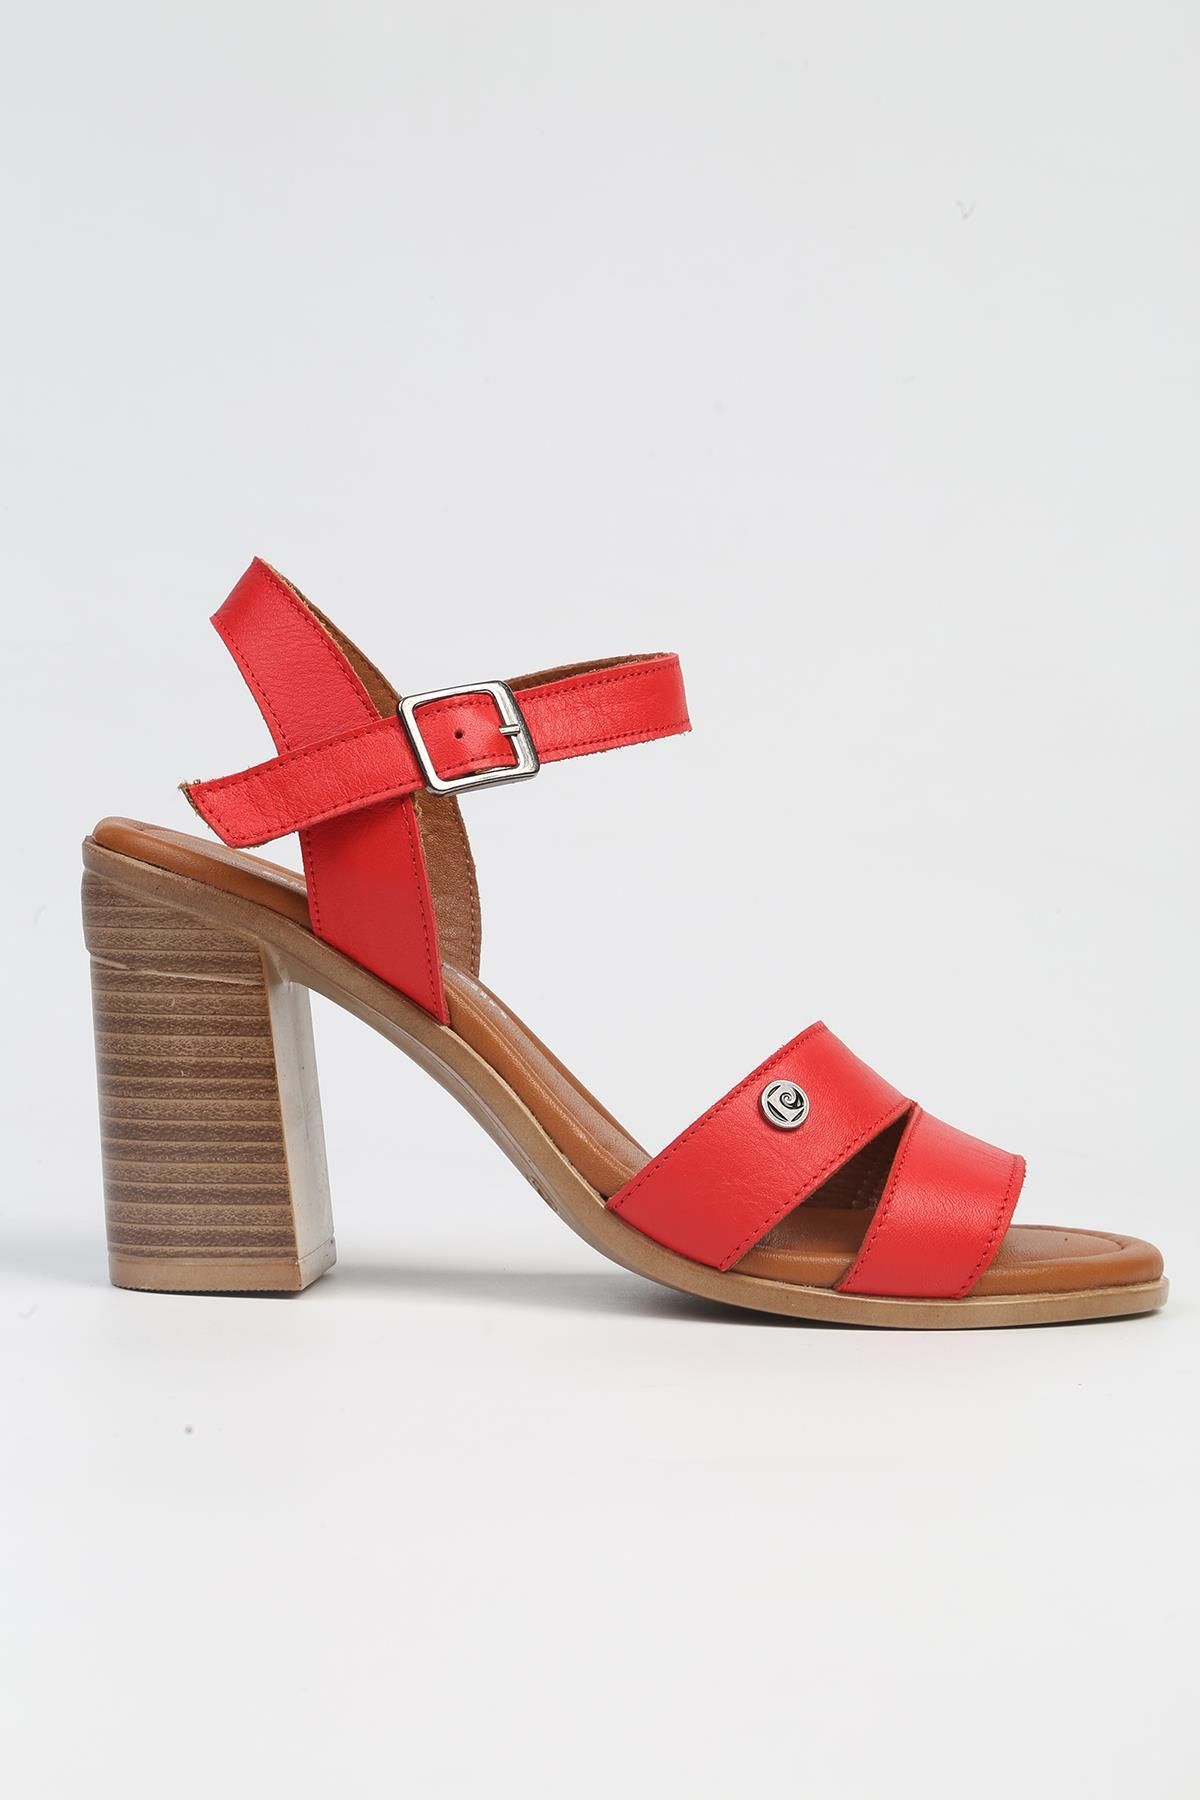 Pierre Cardin ® | PC-7215- 3807 Kirmizi-Kadın Topuklu Ayakkabı